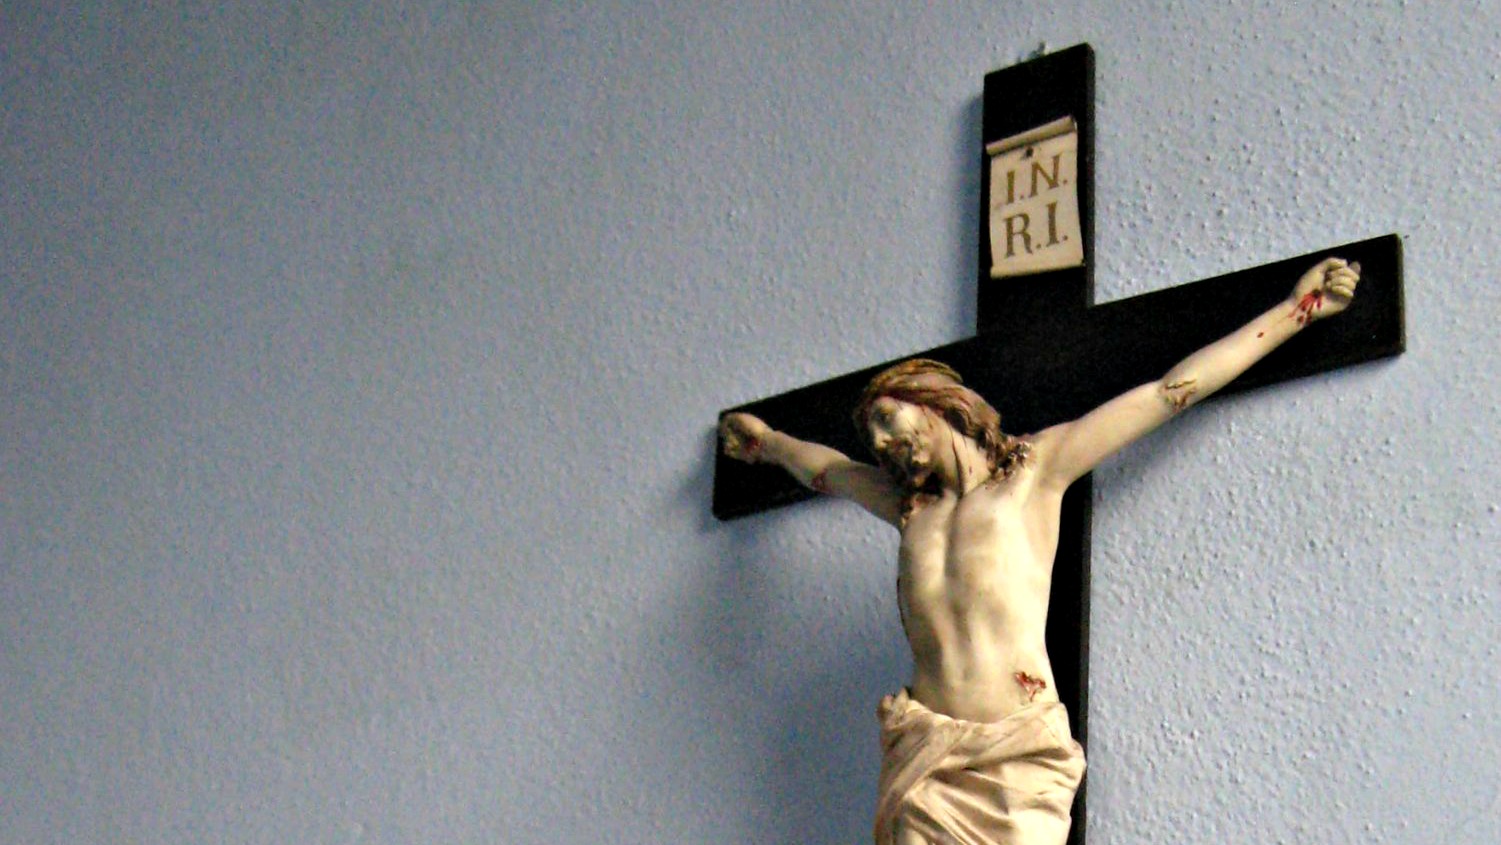 La pétition demande le maintien des symboles chrétiens dans l'espace public (Photo:elycefeliz/Flickr/CC BY-NC-ND 2.0)